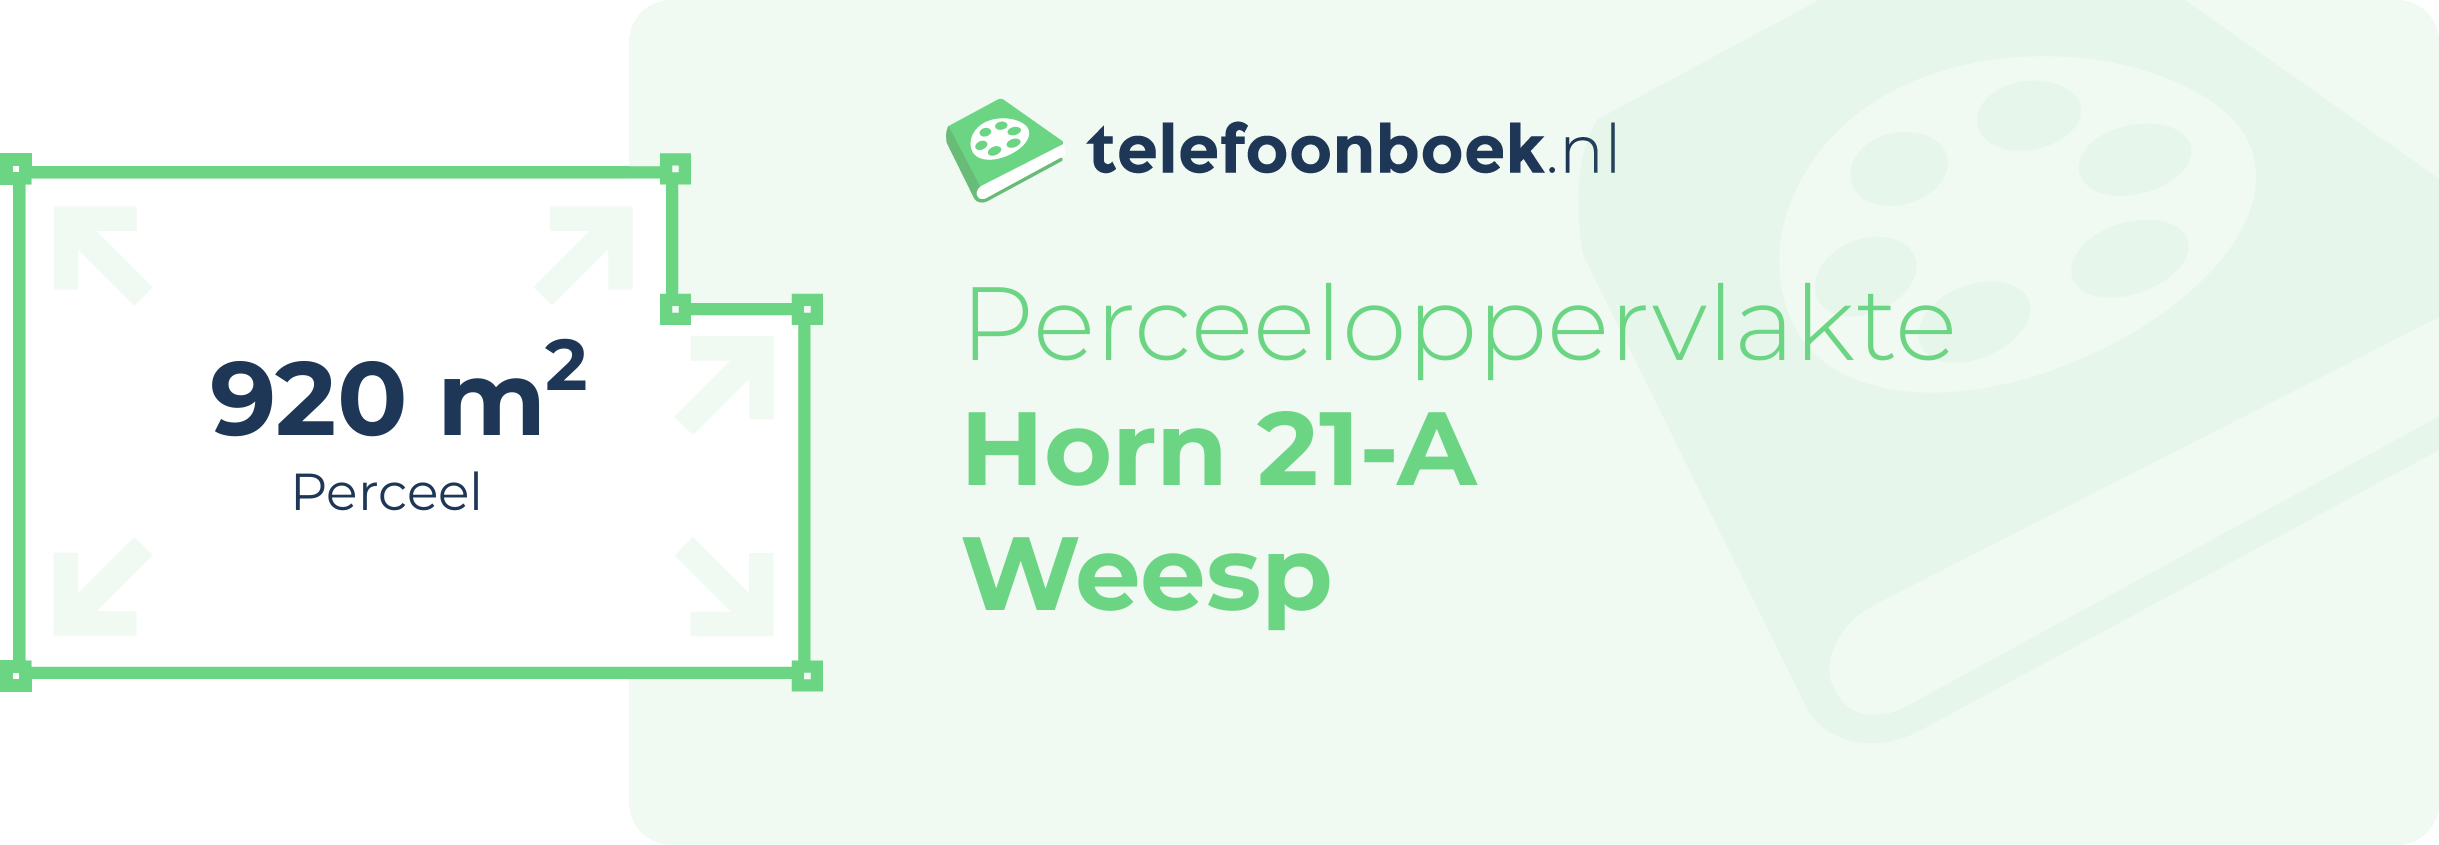 Perceeloppervlakte Horn 21-A Weesp